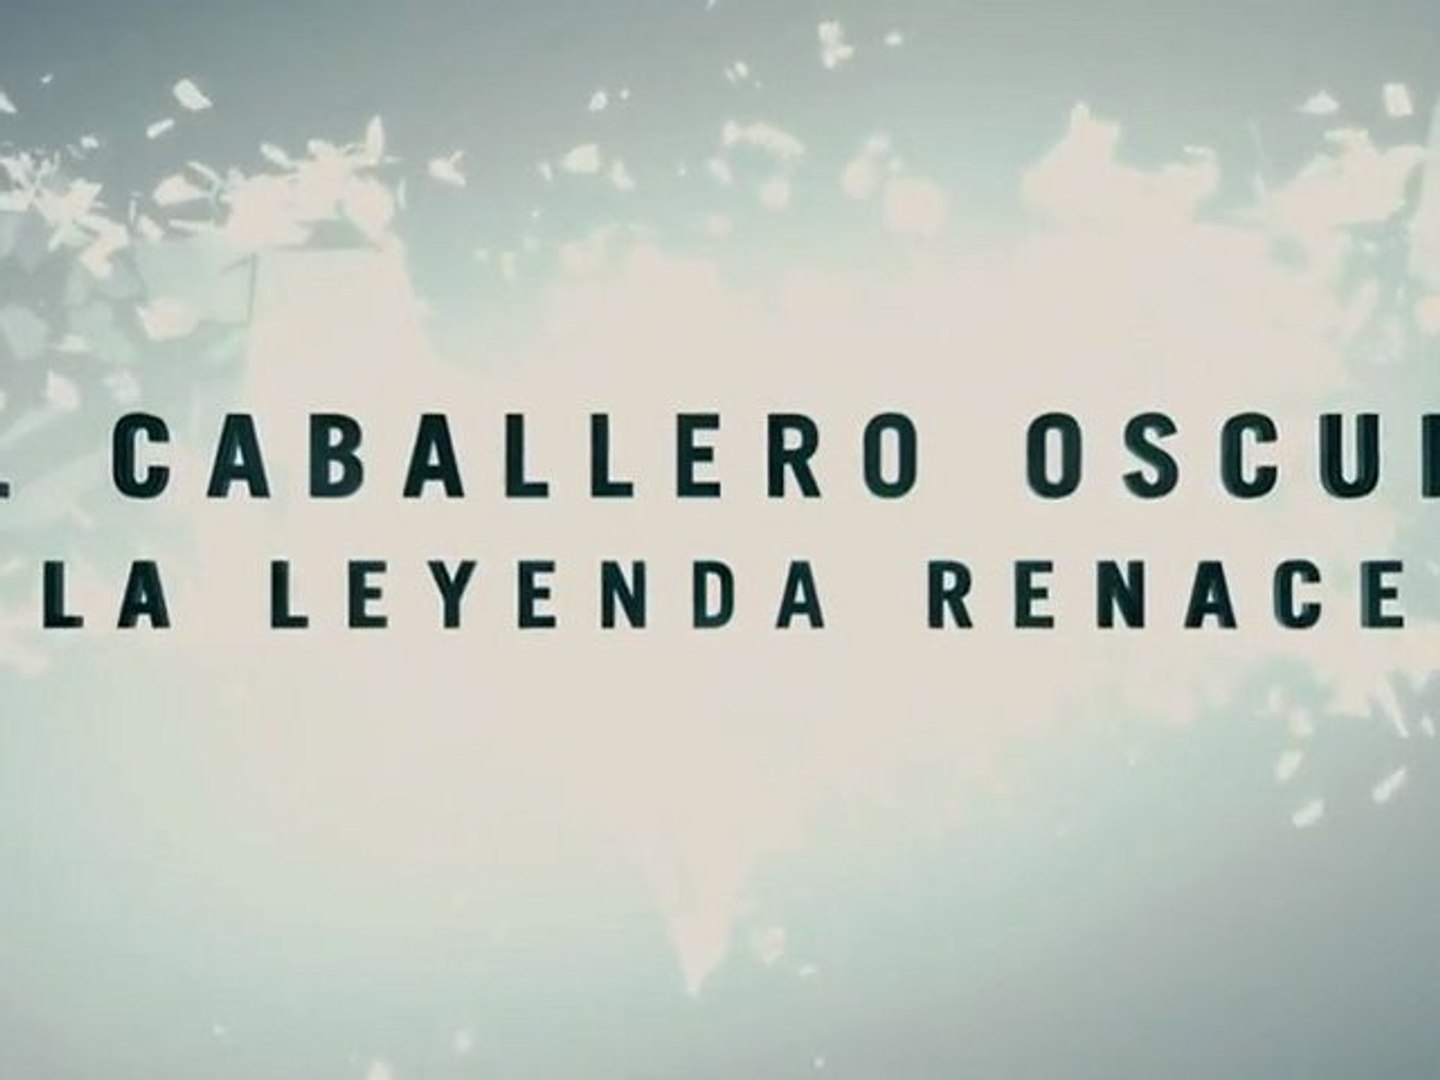 El Caballero Oscuro: La leyenda renace - Trailer final en español HD -  Vídeo Dailymotion